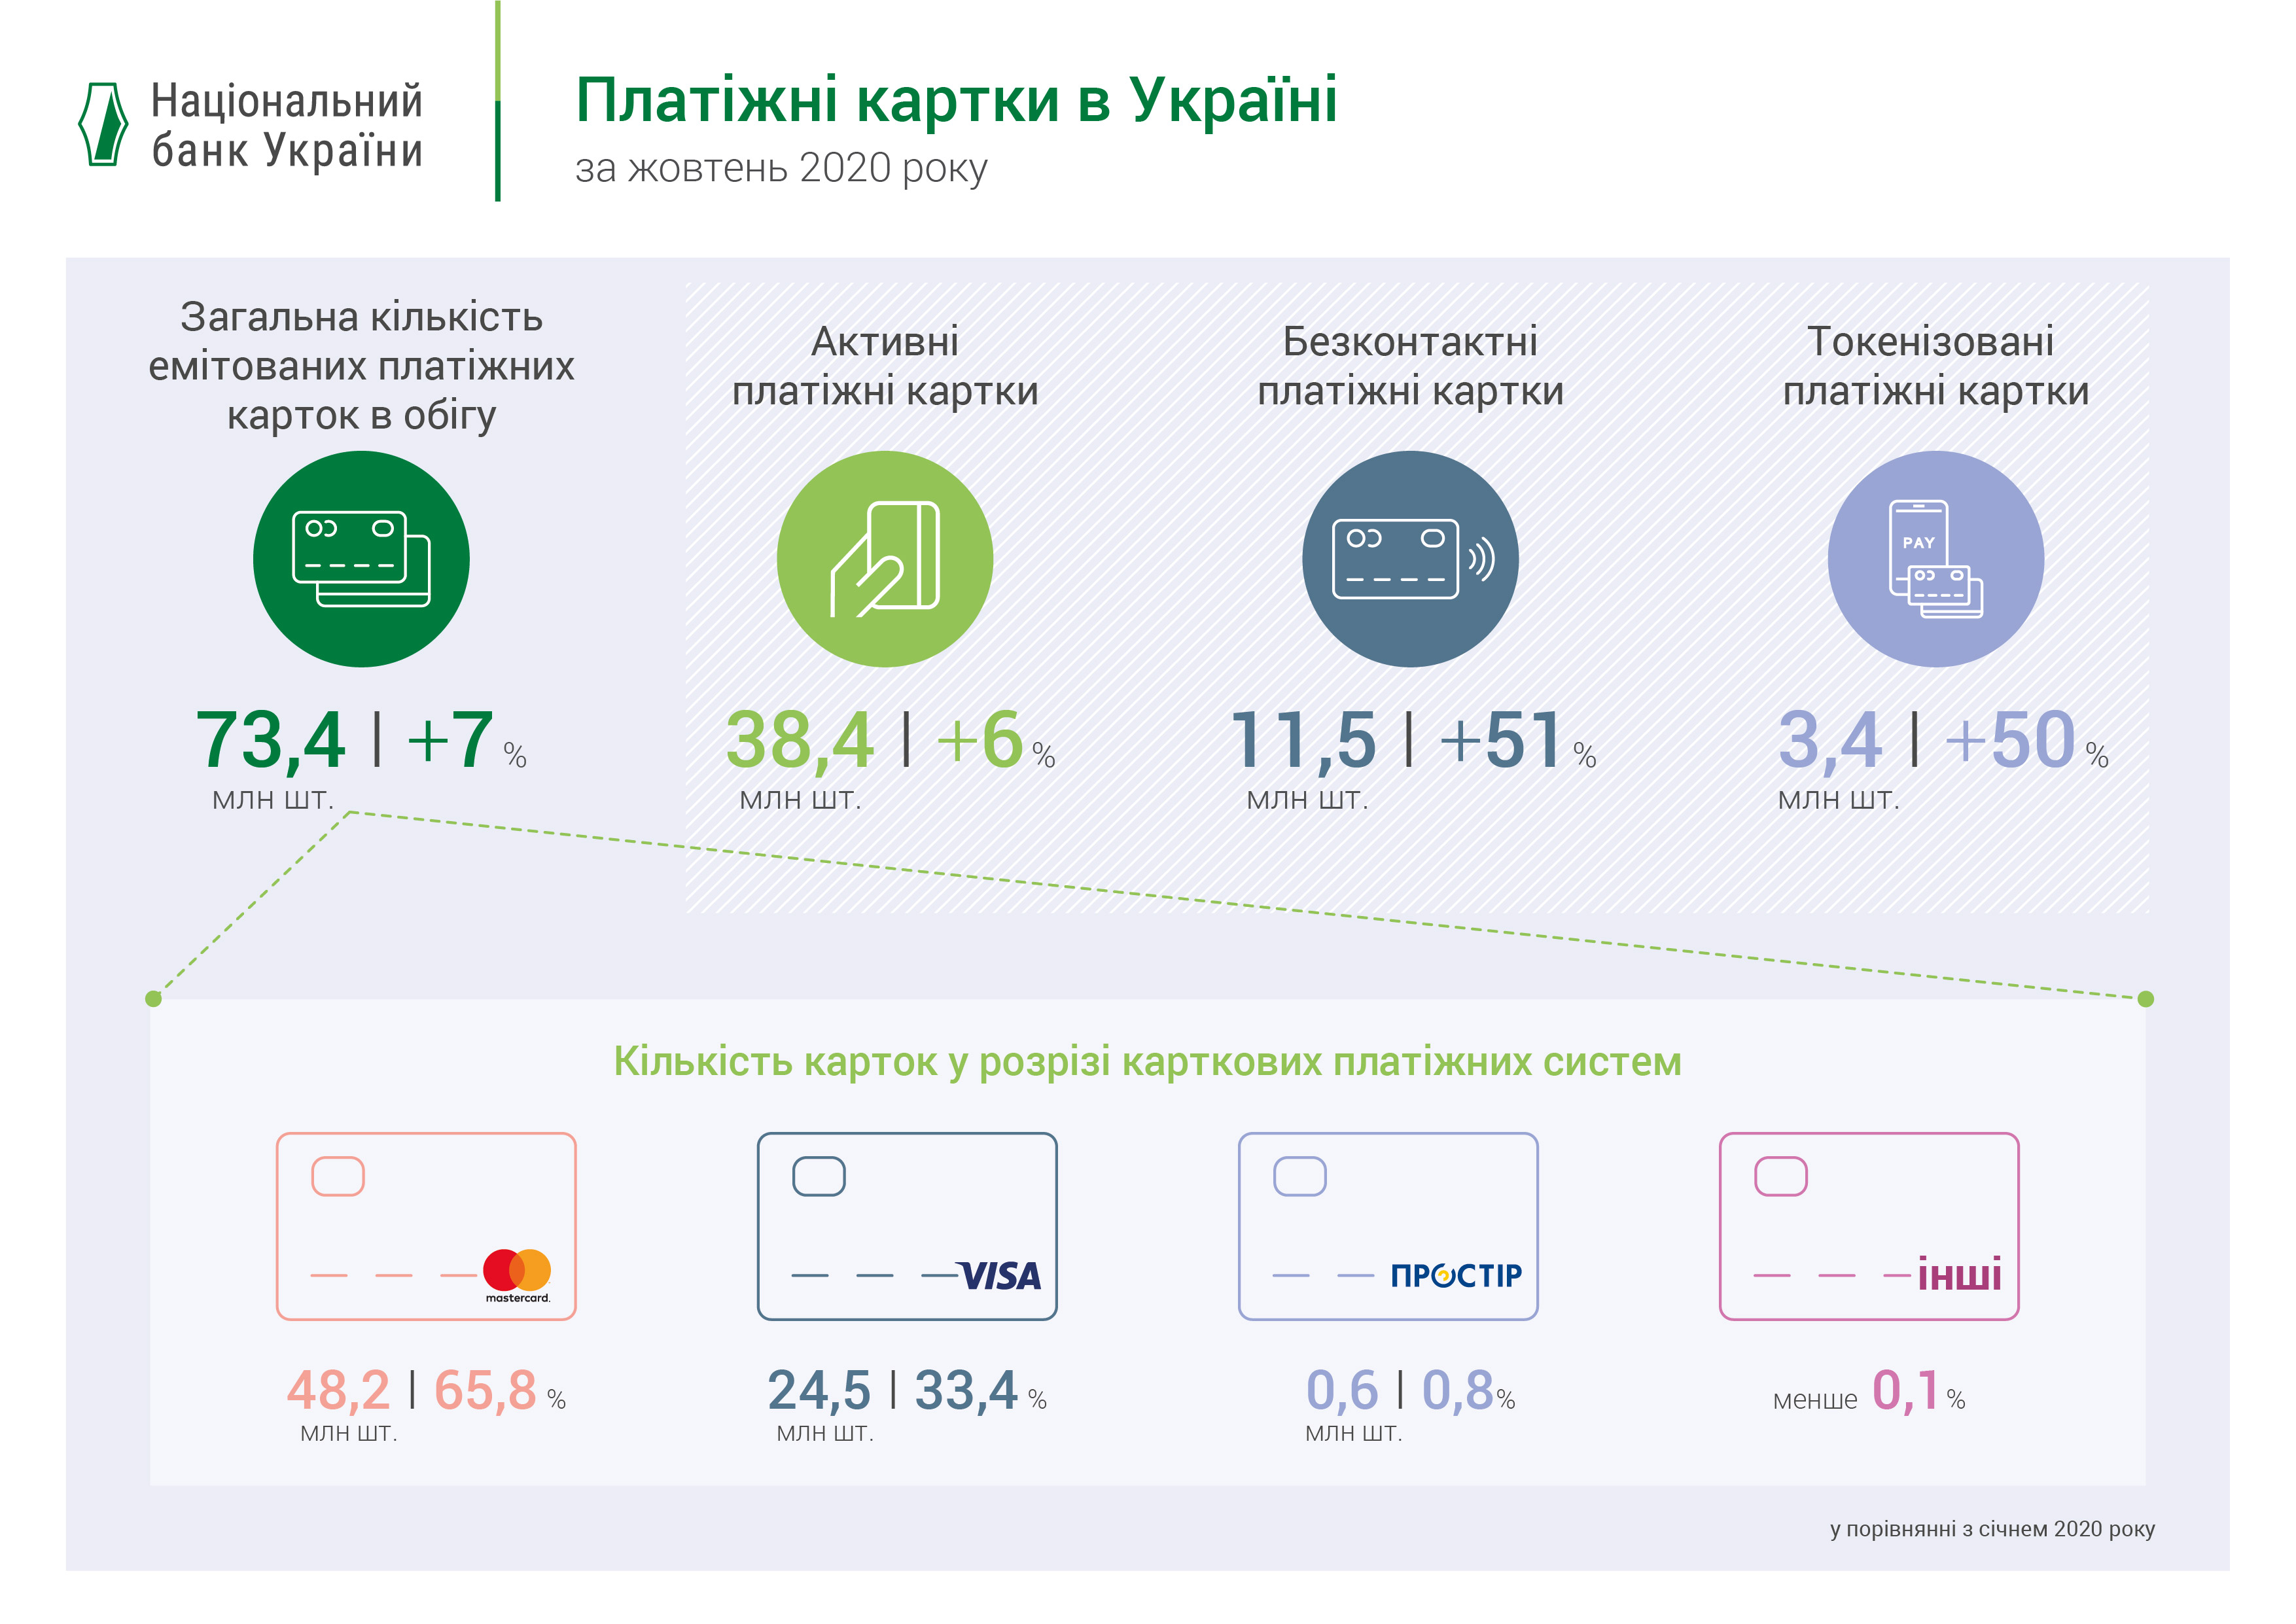 Платіжні картки в Україні, 9 місяців 2020 року